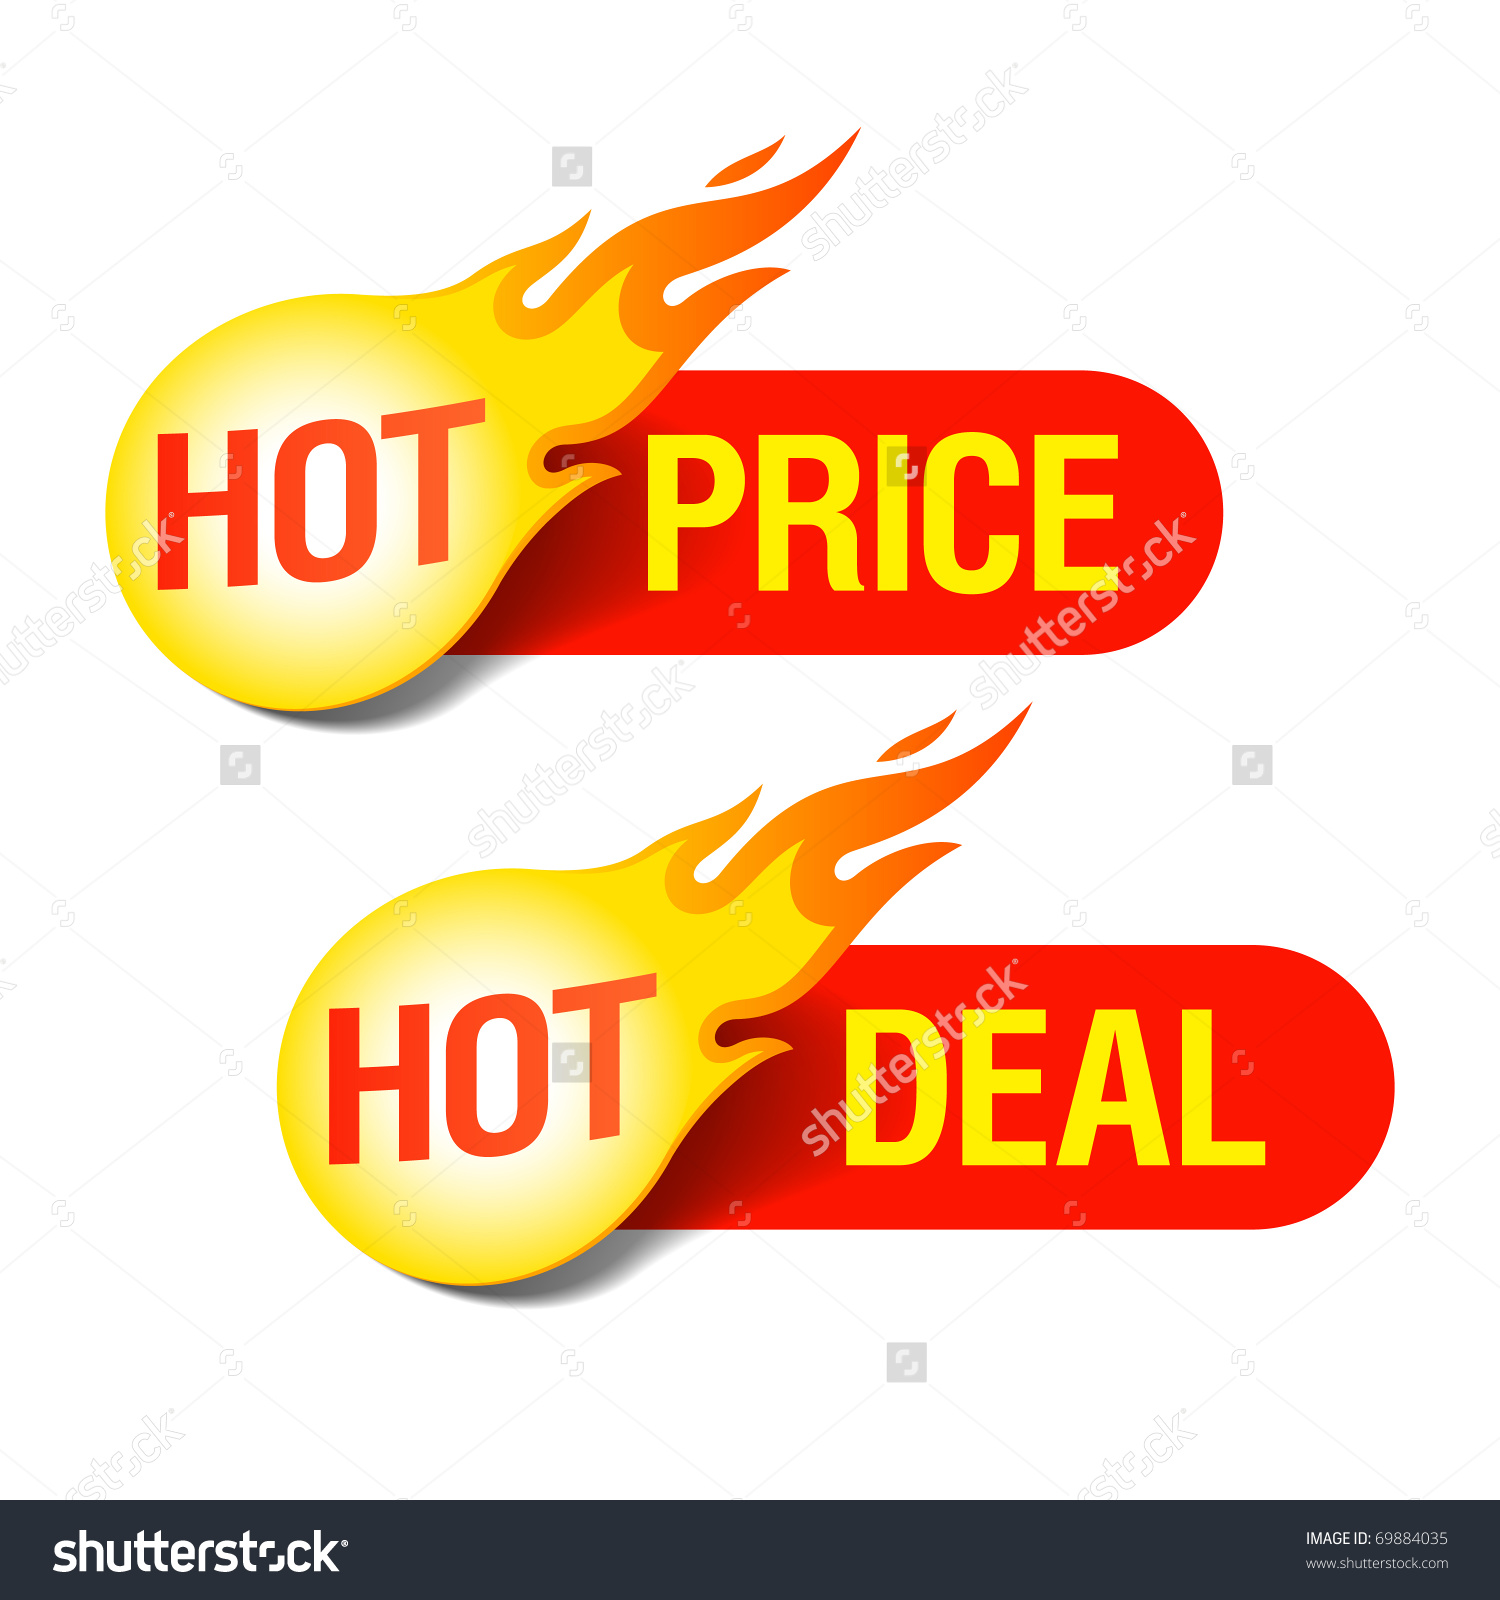 Hot deals clipart.